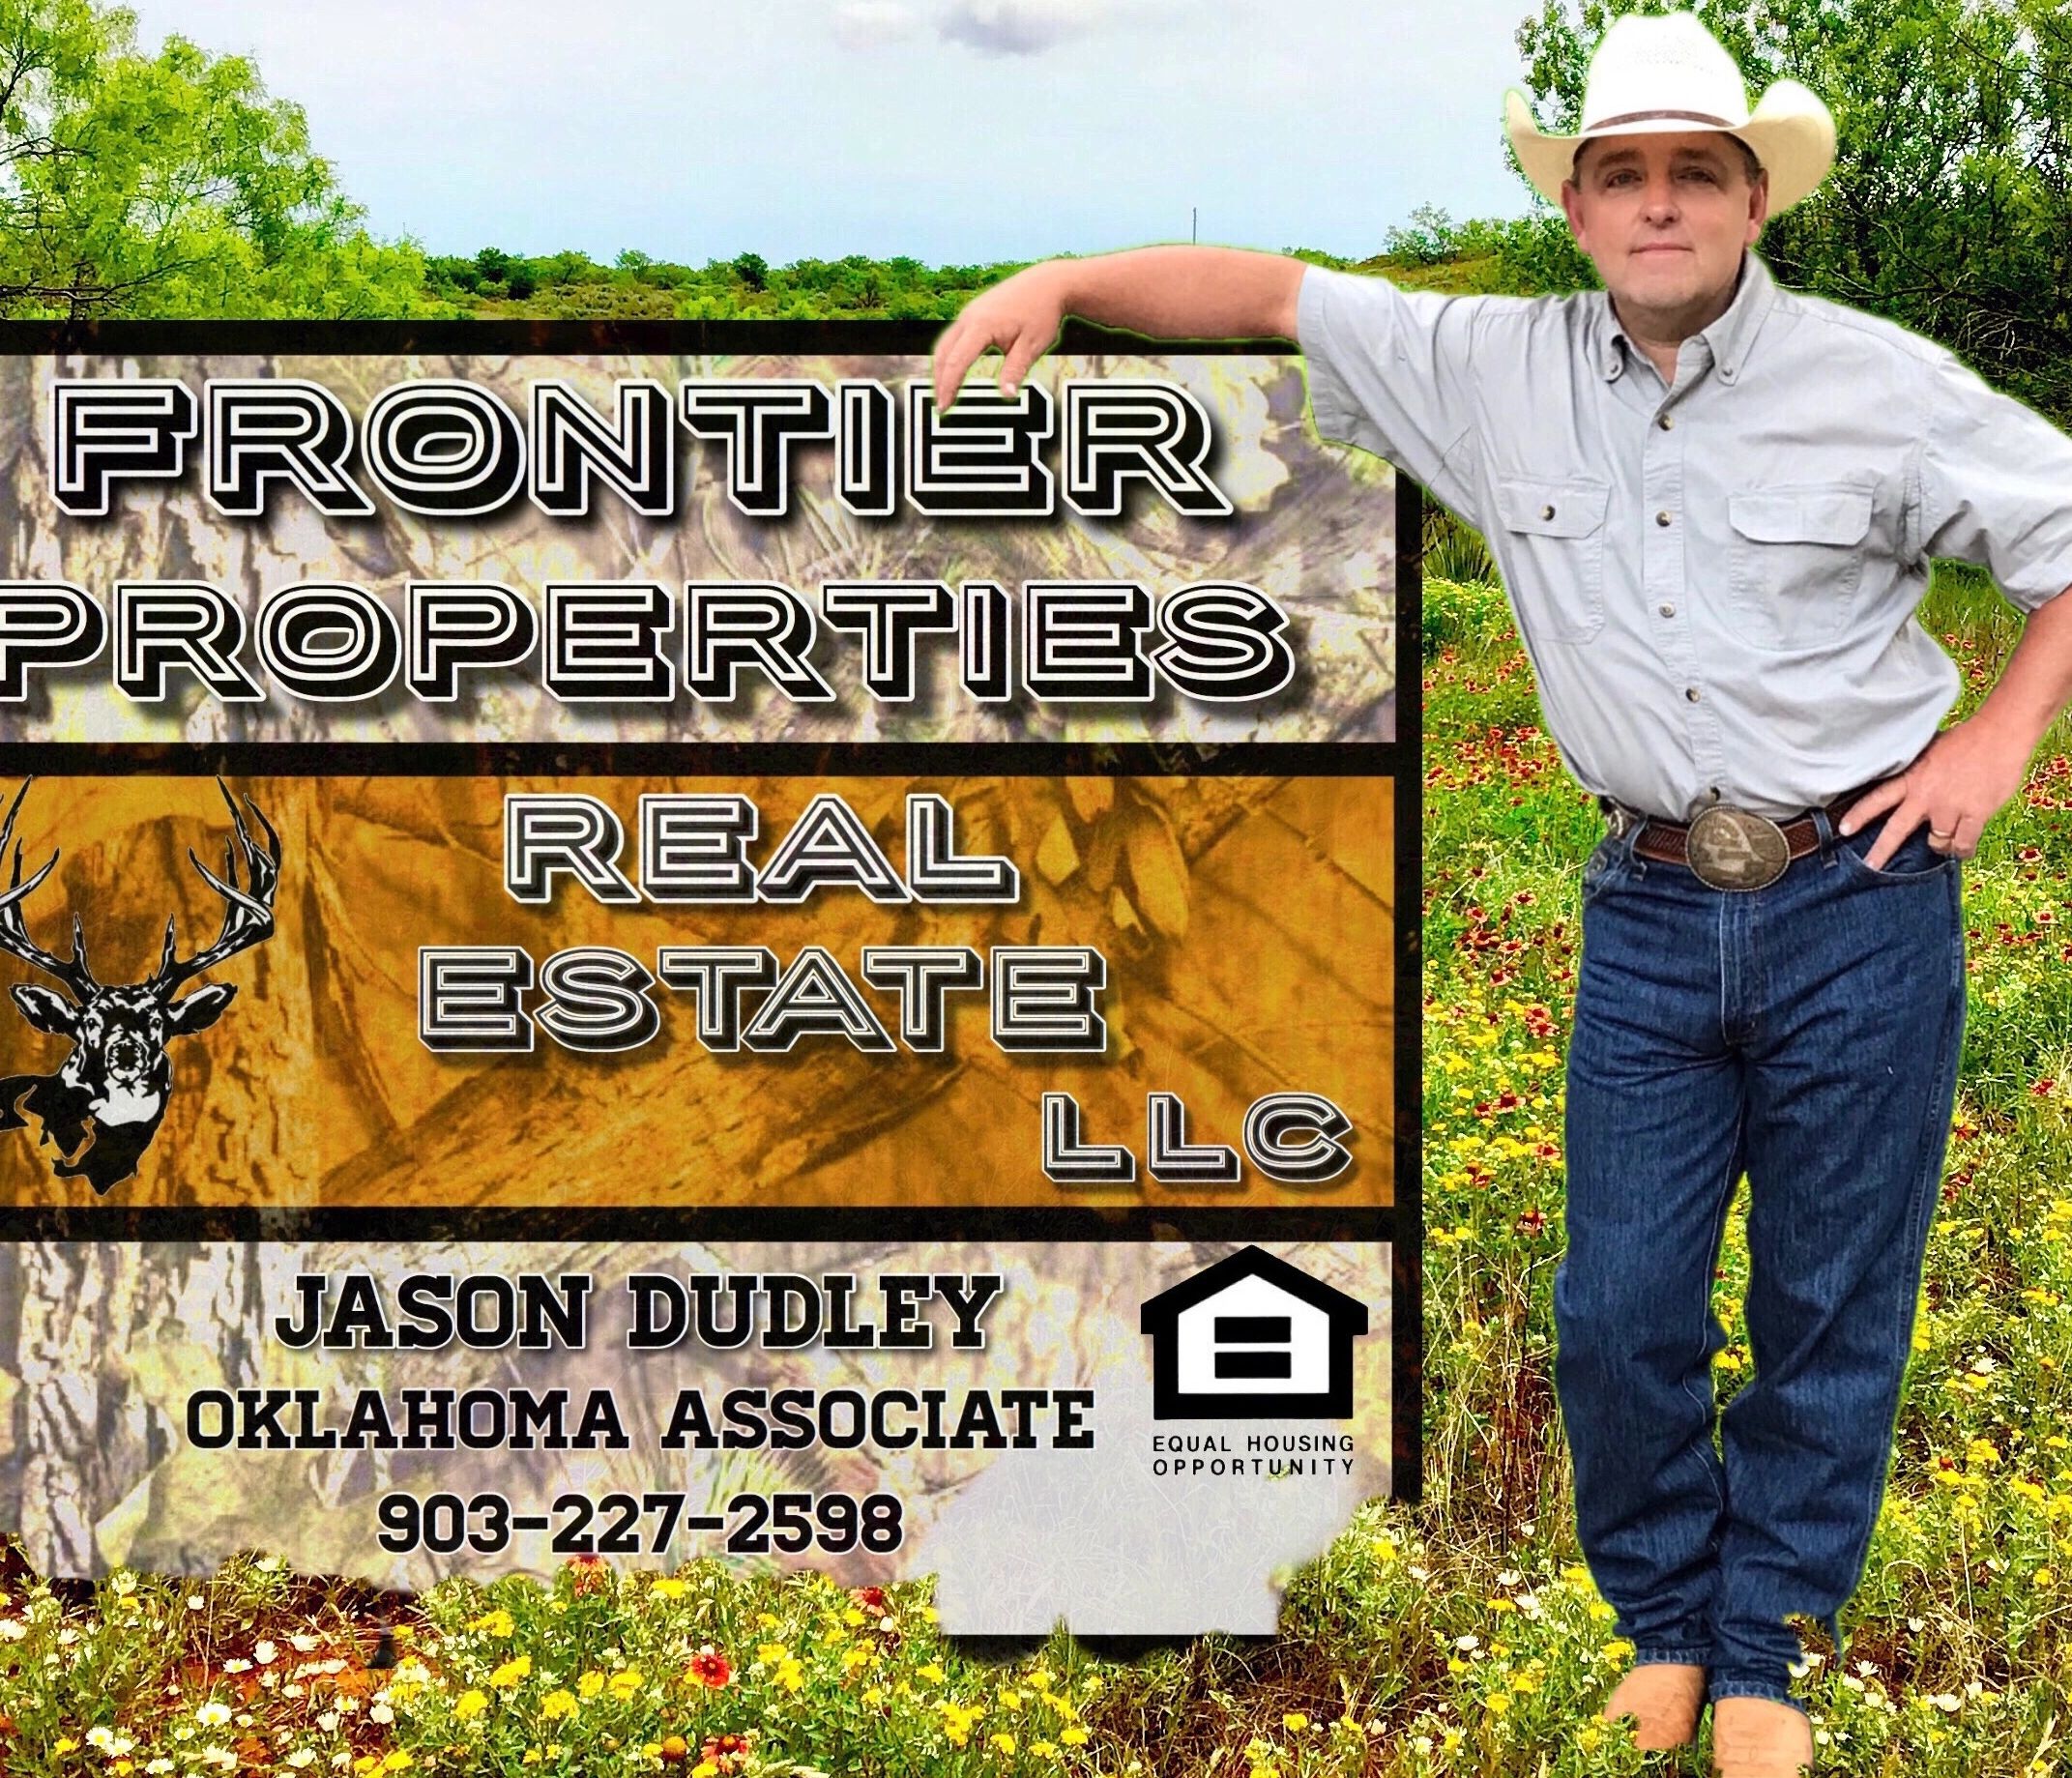 Jason Dudley Frontier Properties